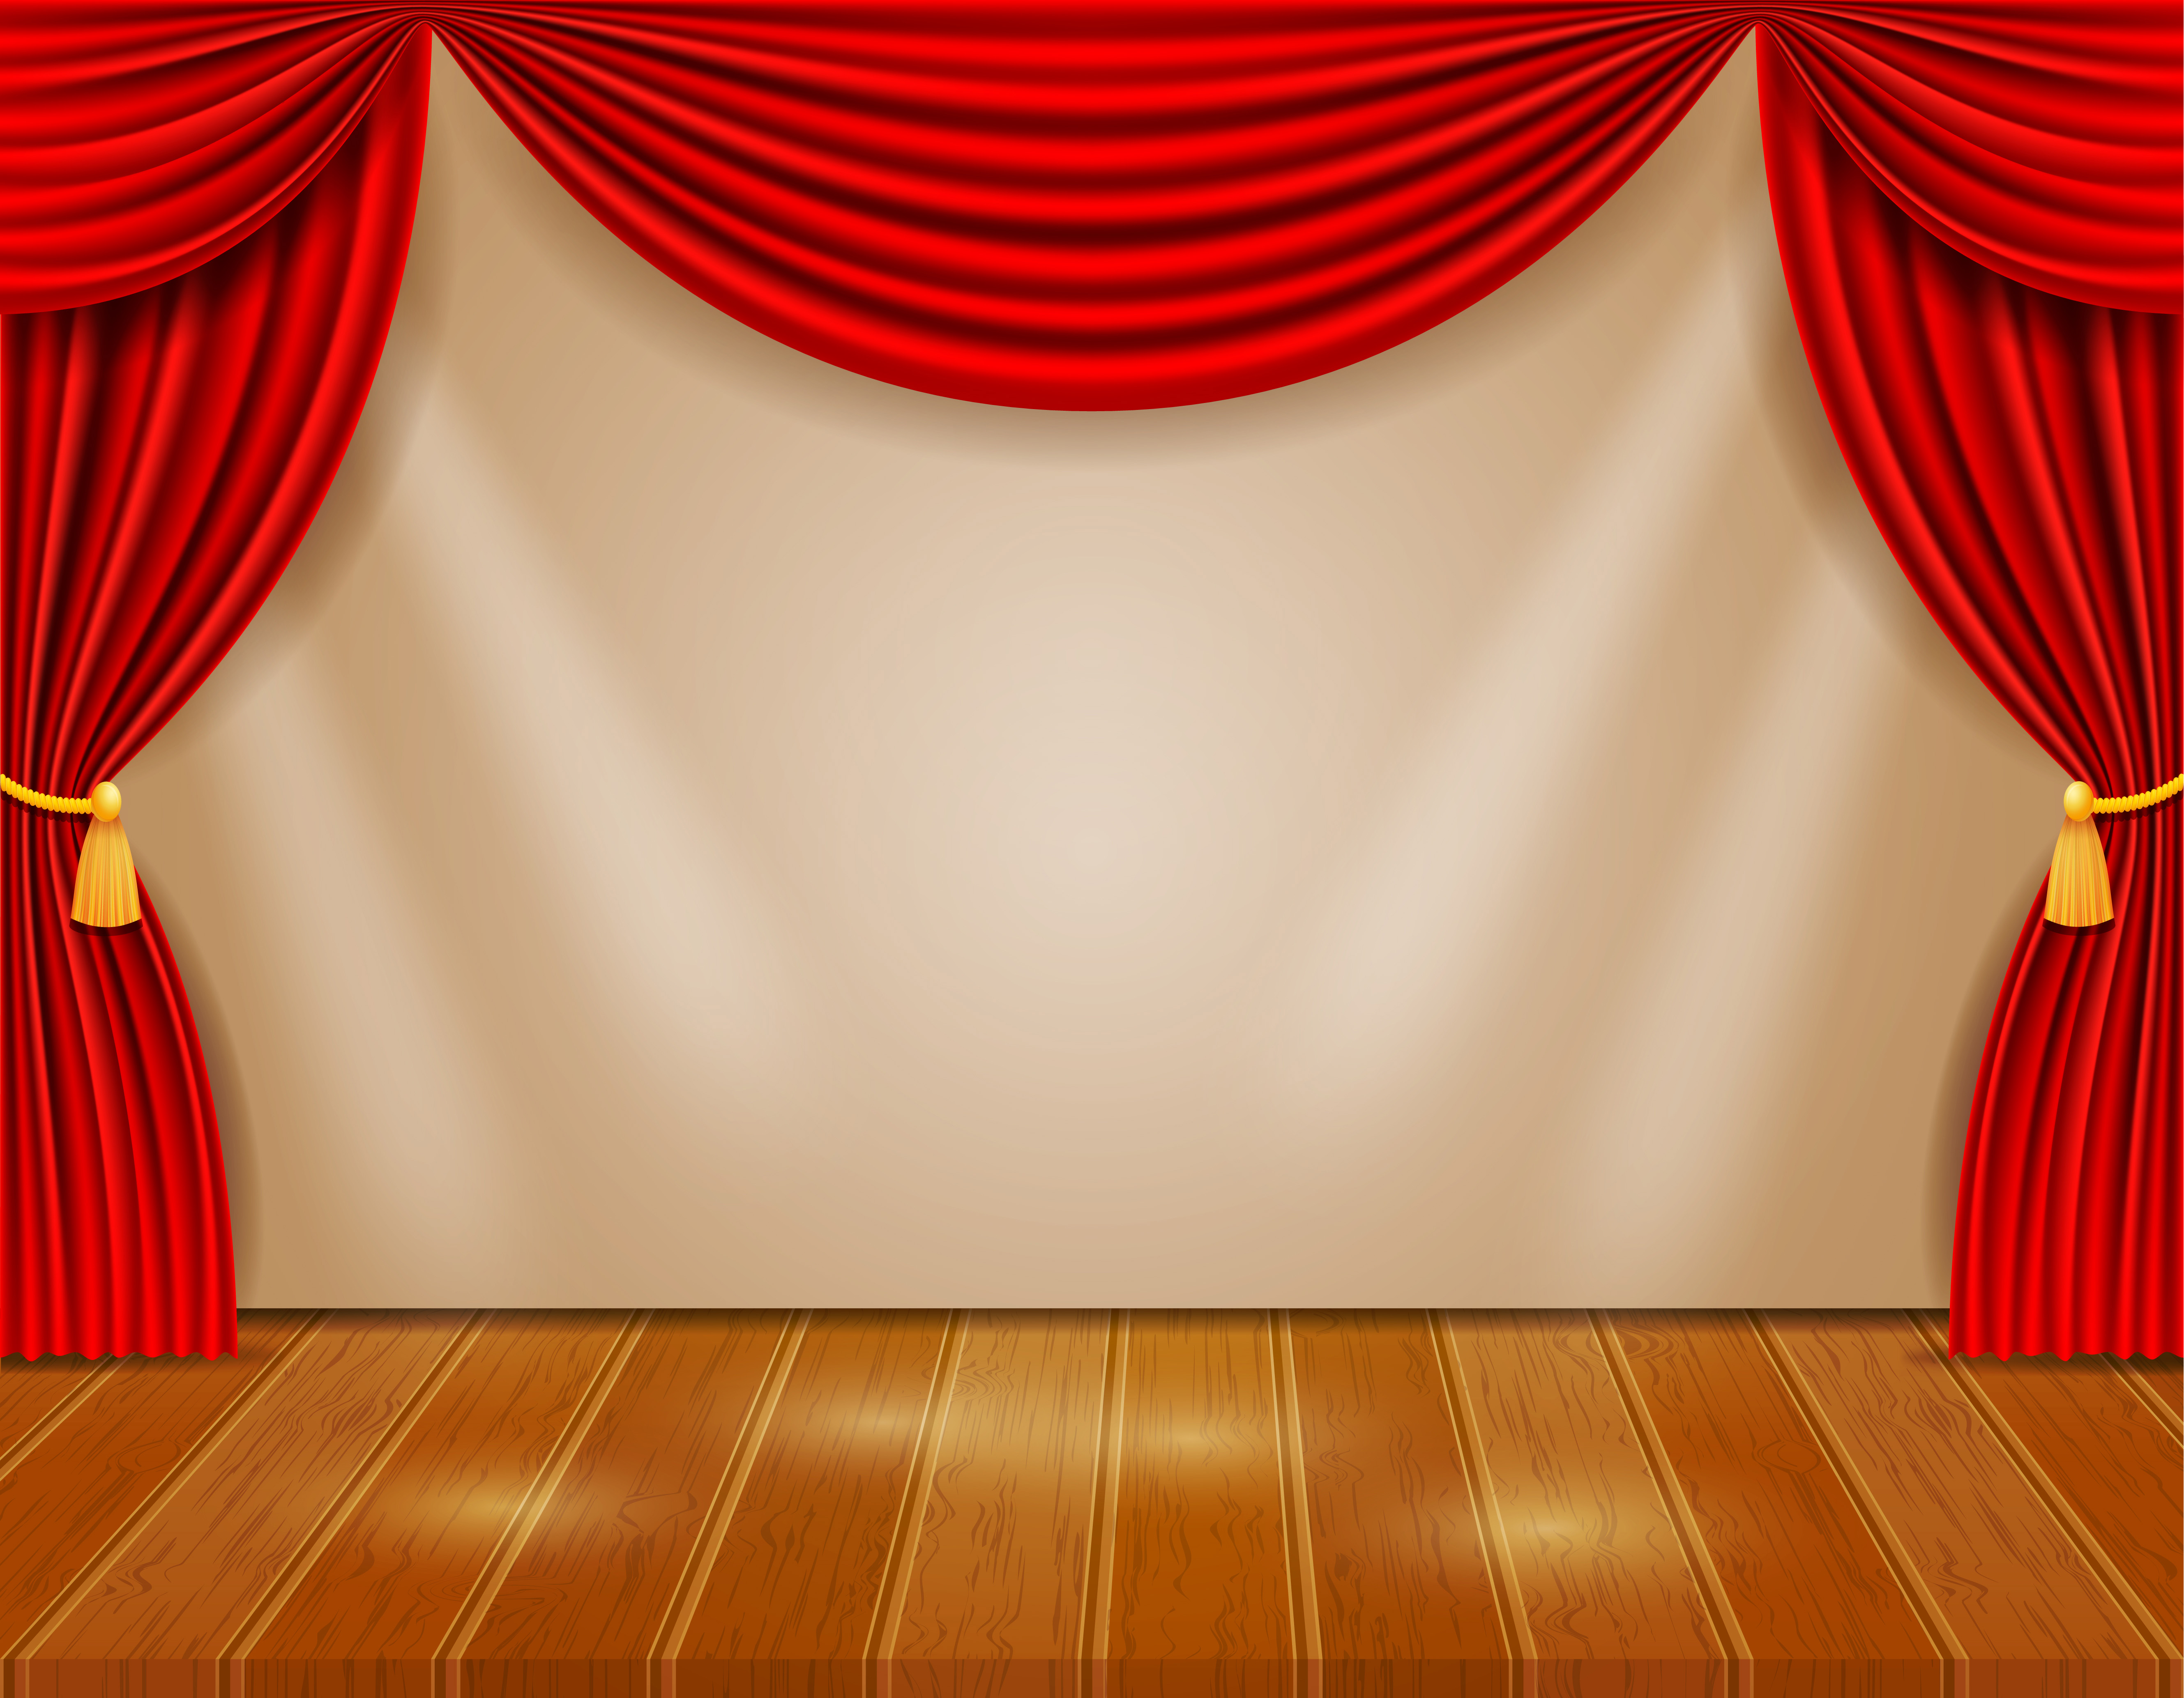 Palco de teatro com cortinas vermelhas e em luz. Desenho animado vetorial  ilustração do interior do